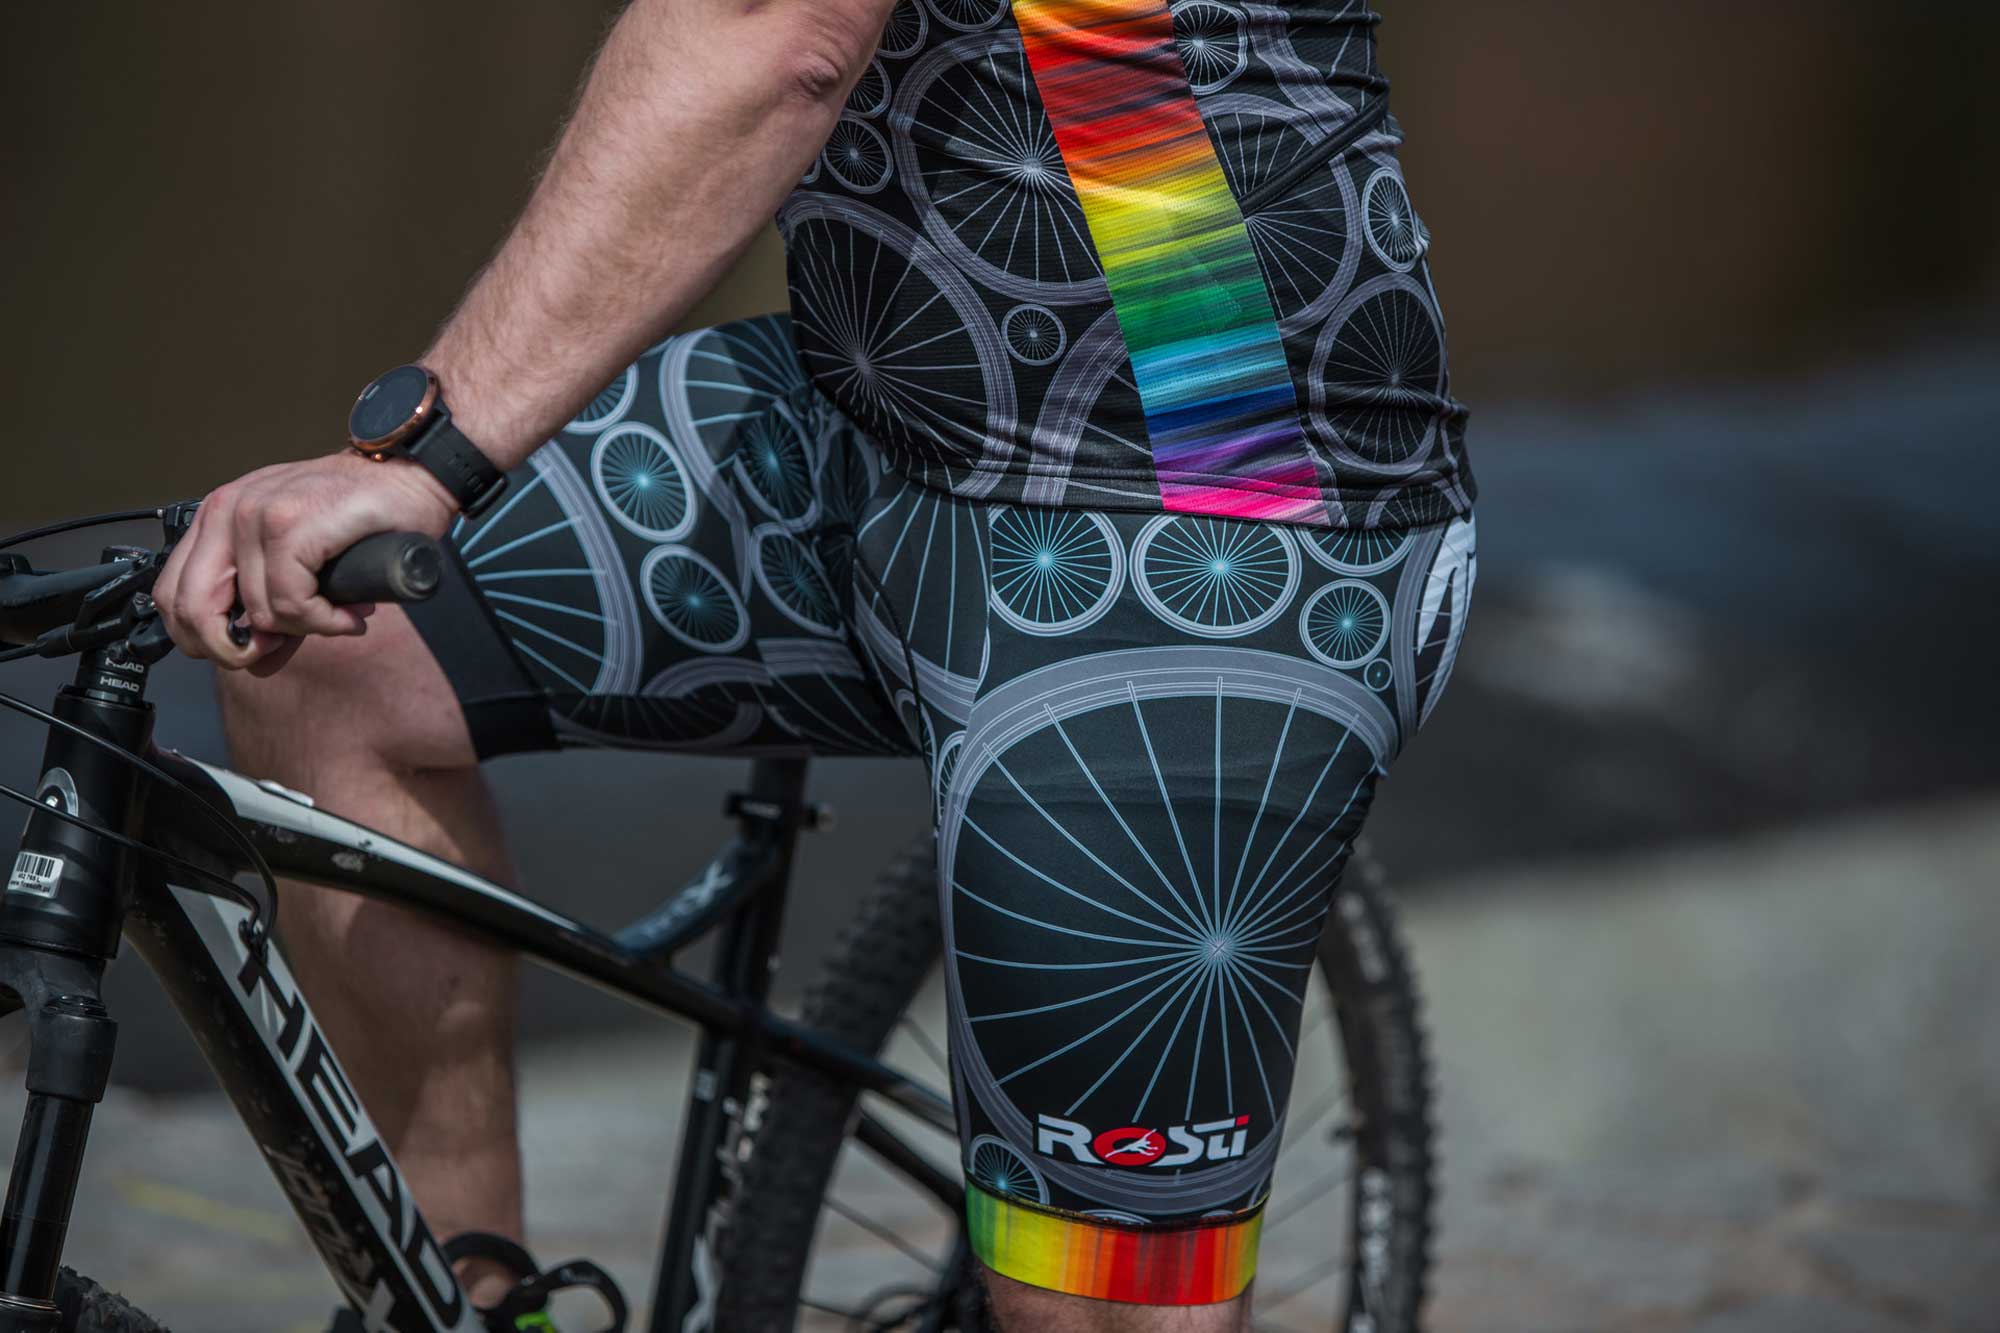 Pantaloni scurți ciclism bărbați cu bretele